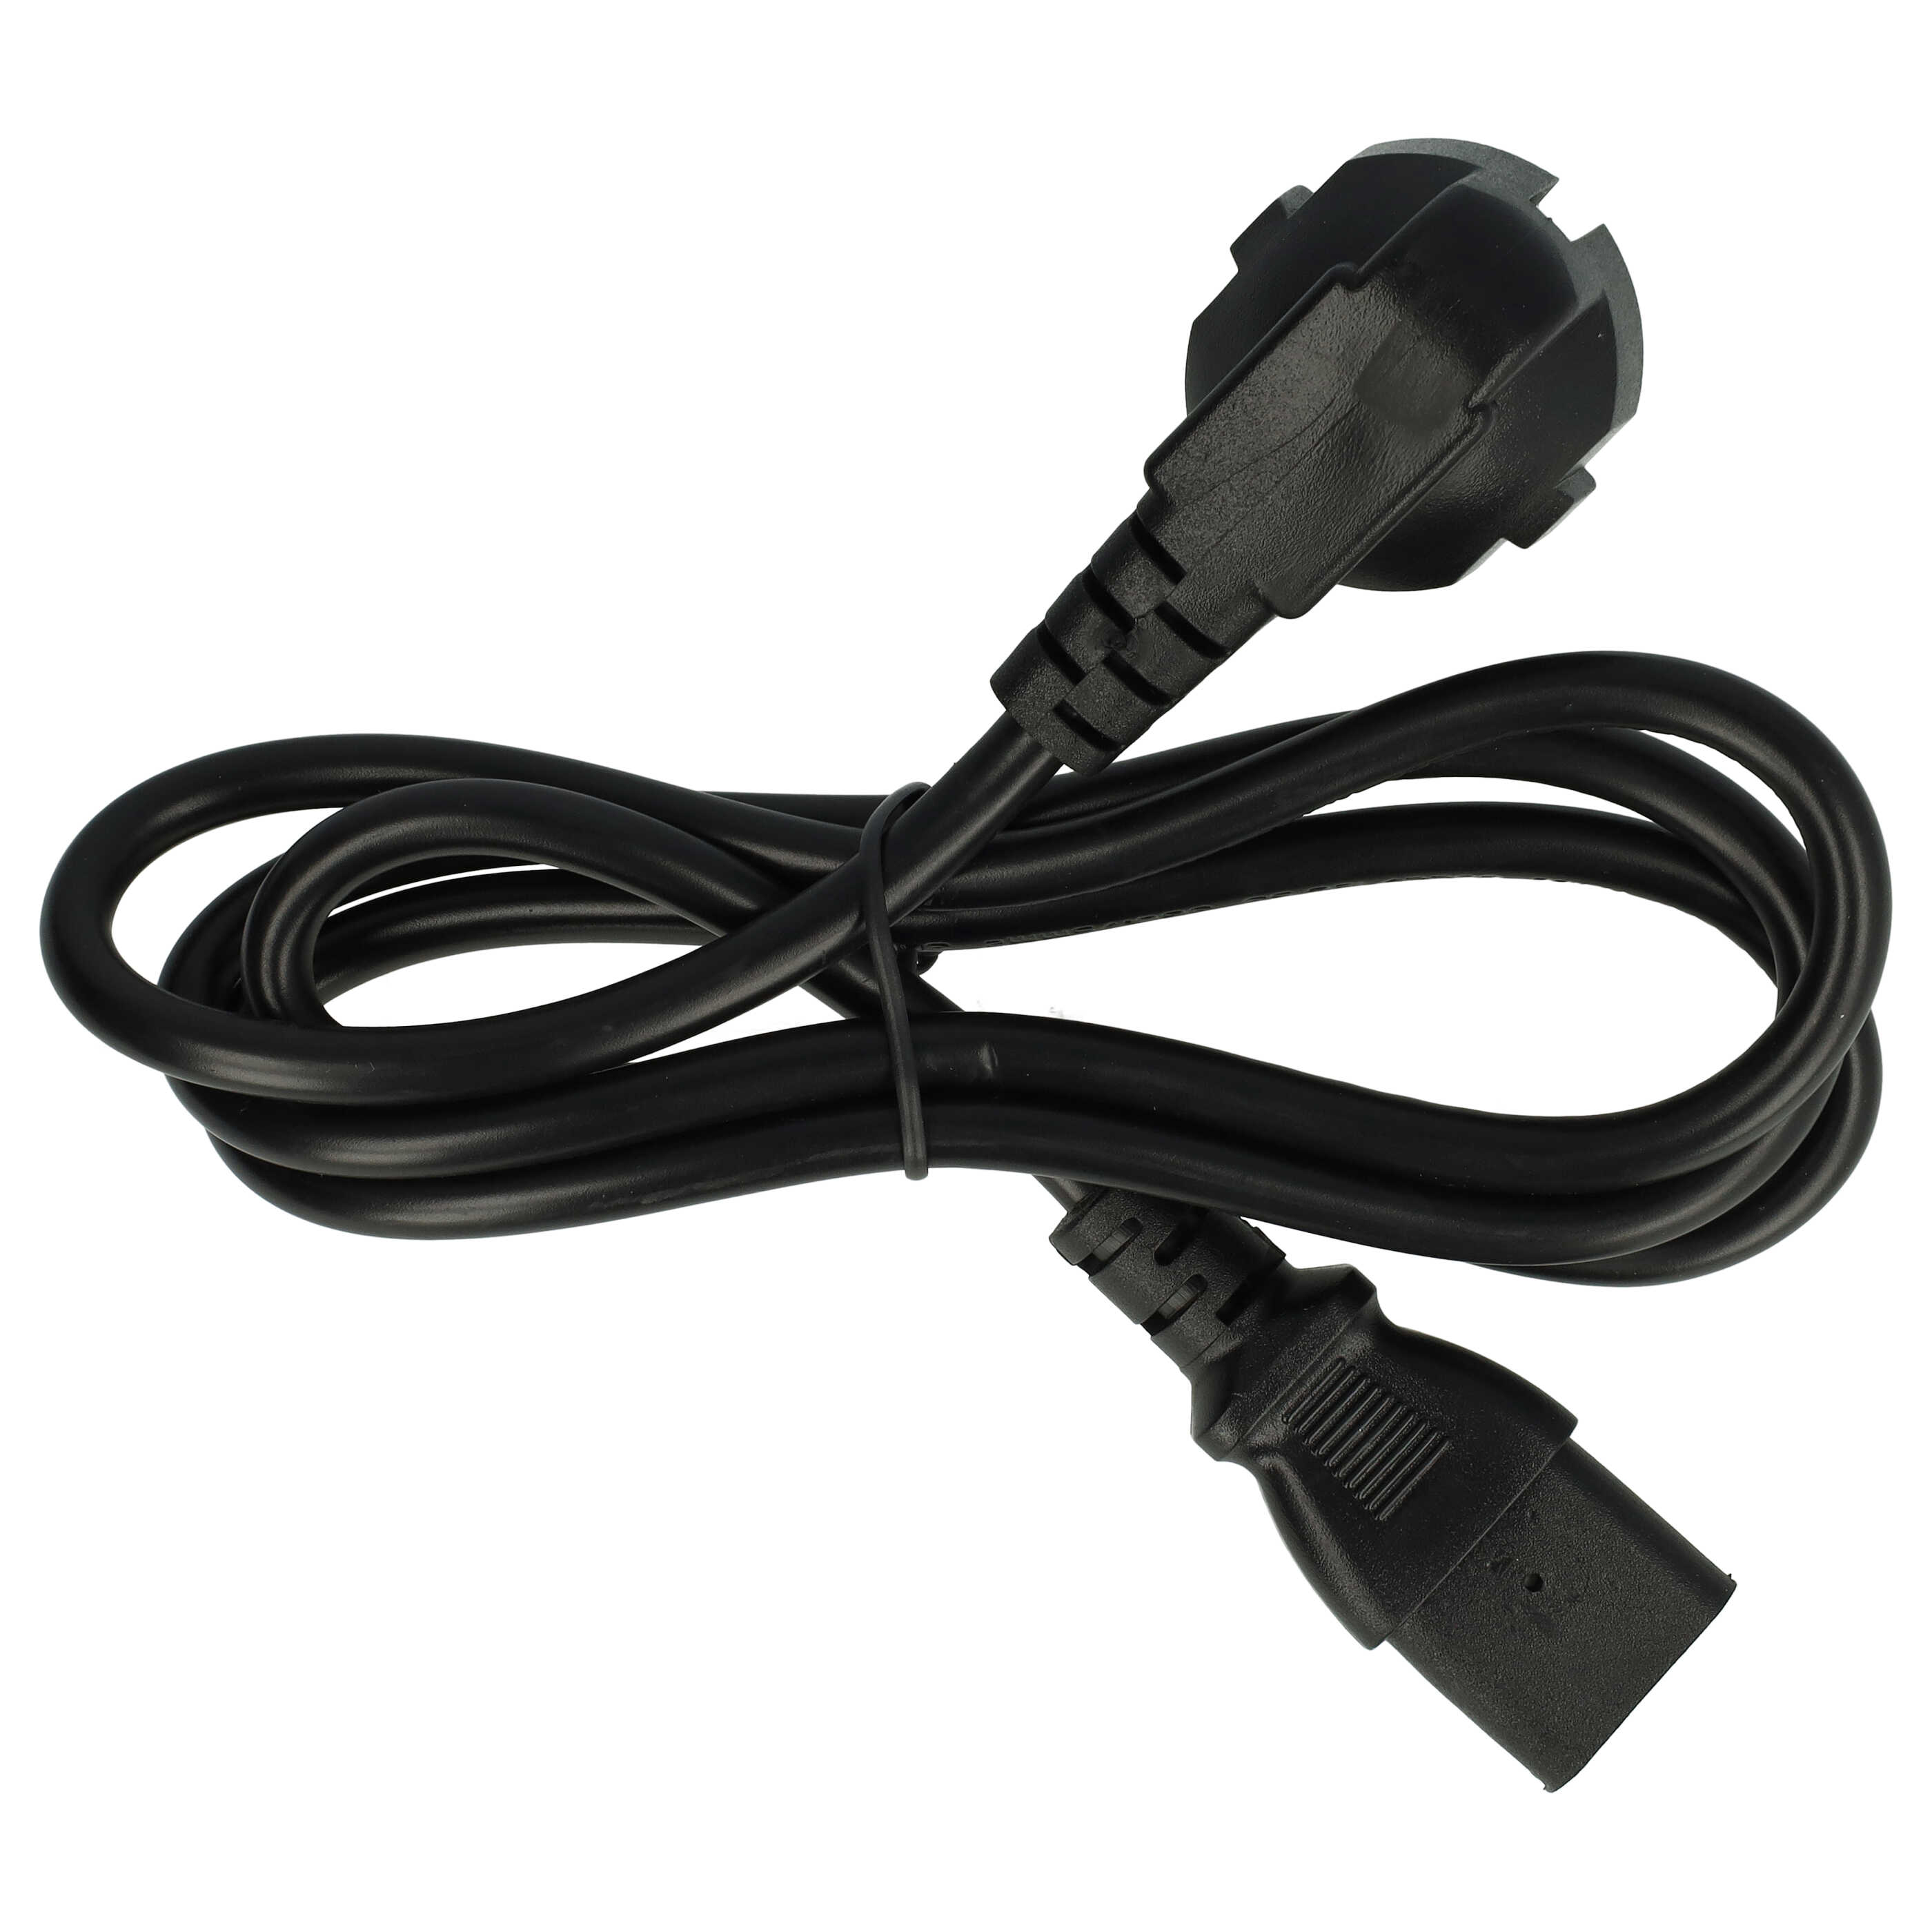 Cable de red C13 euroconector compatible con dispositivo IEC por ej. PC, monitor, ordenador - 1,2 m